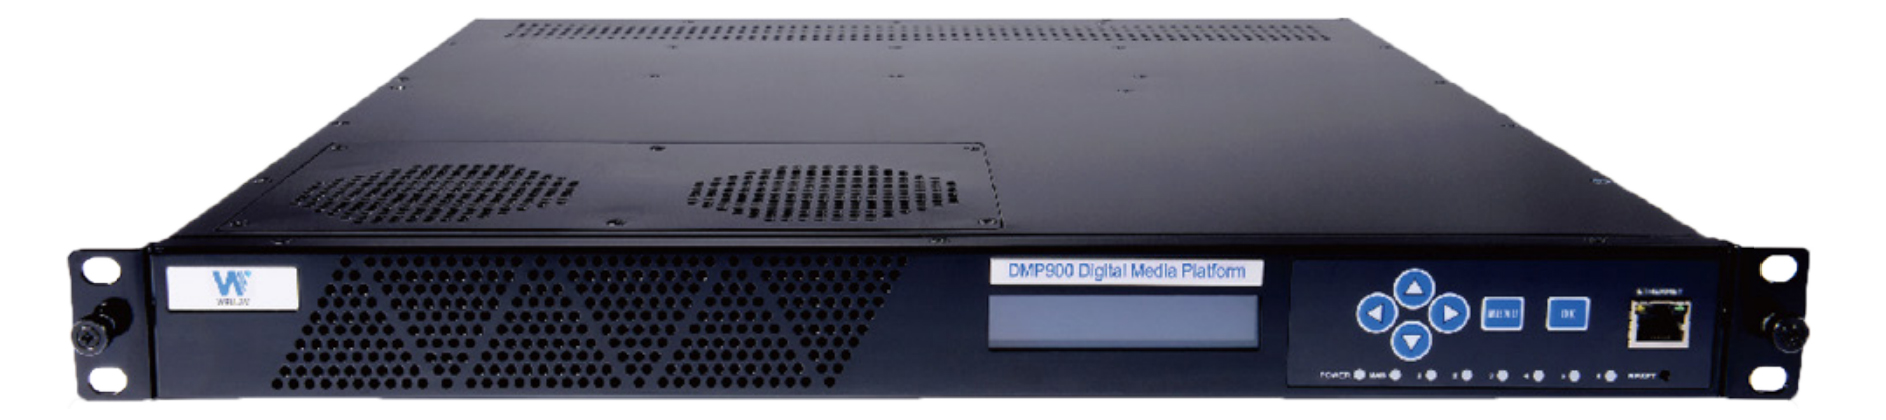 Универсальная мультимедийная платформа DMP900